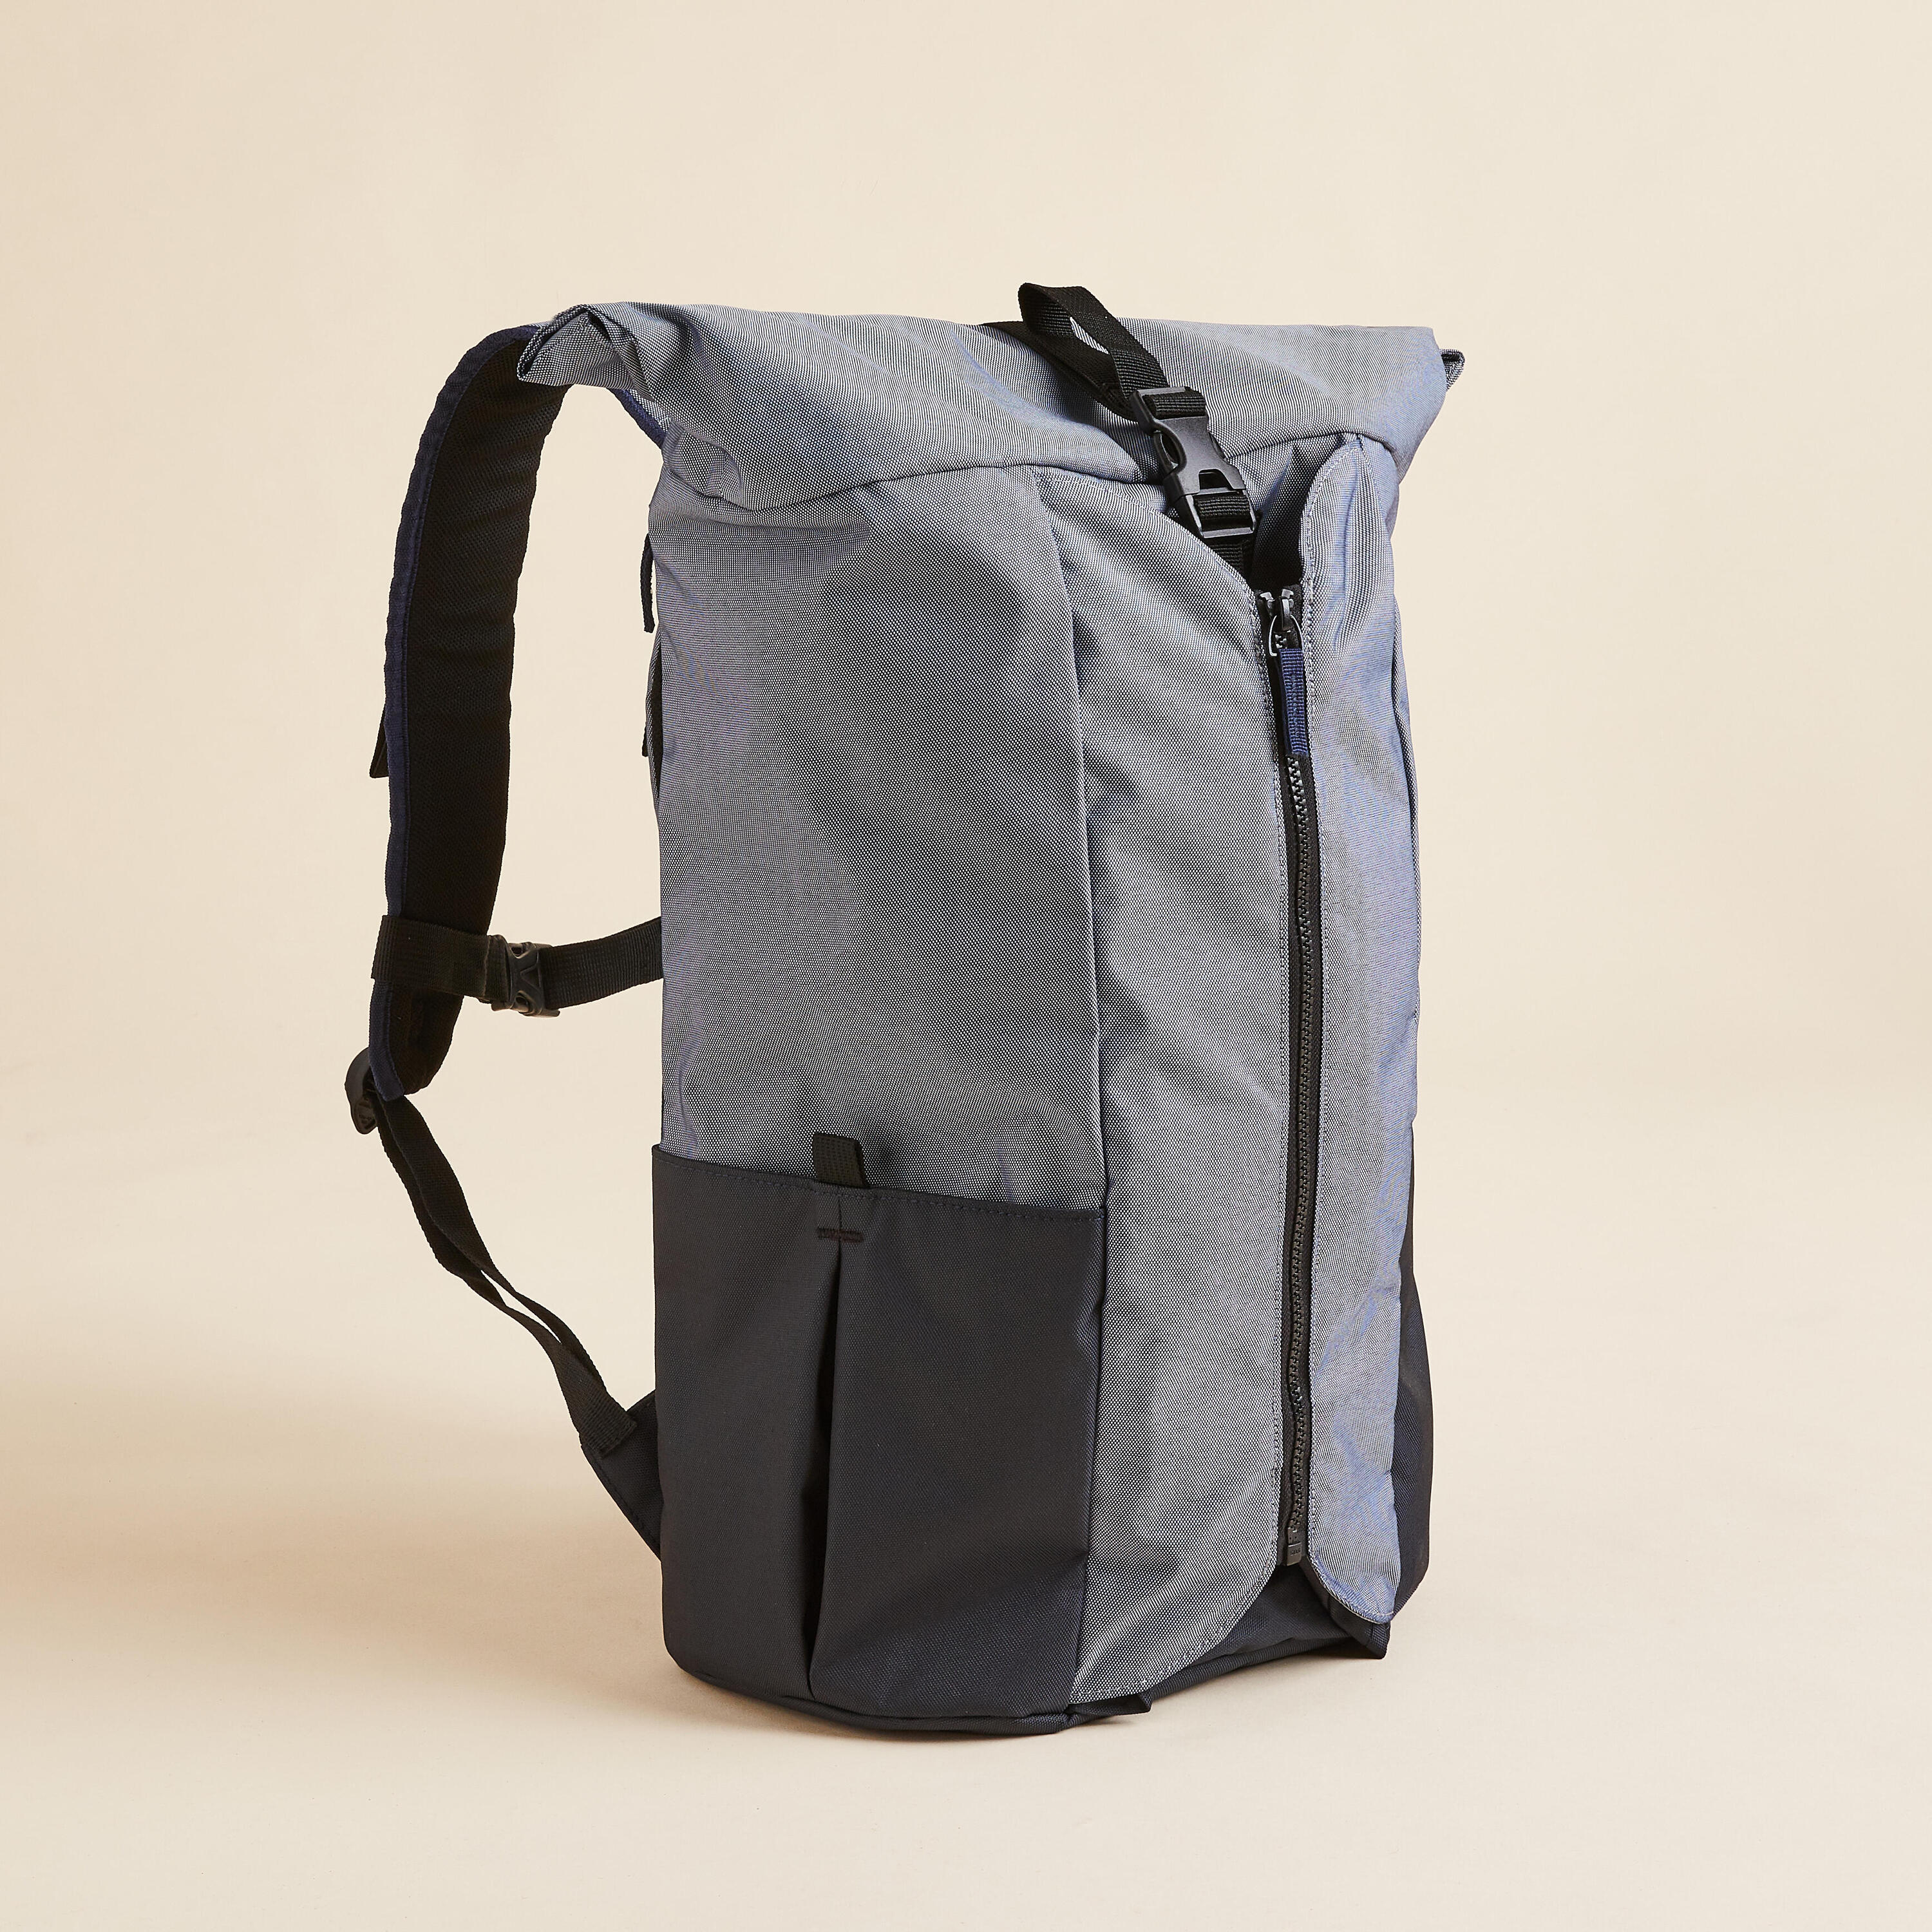 KIMJALY Yoga Mat Backpack - Blue/Grey